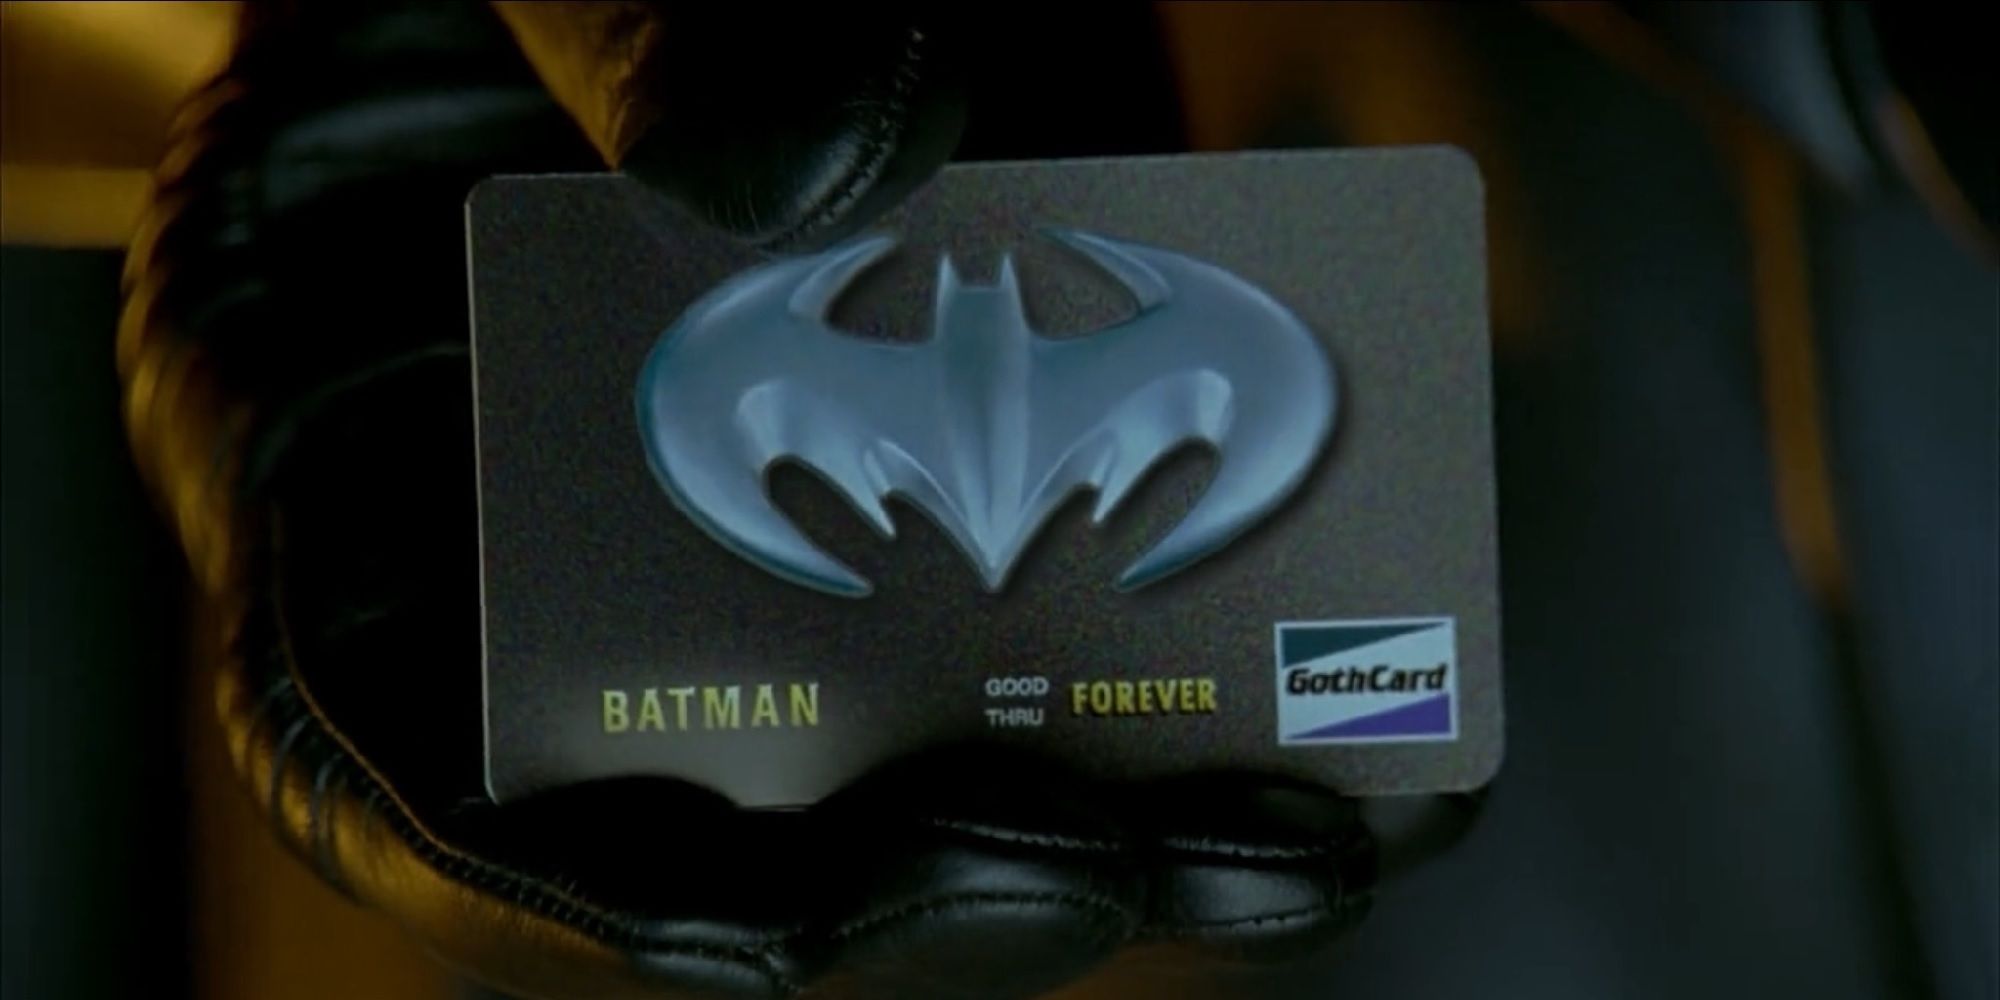 a close up of batmans credit card